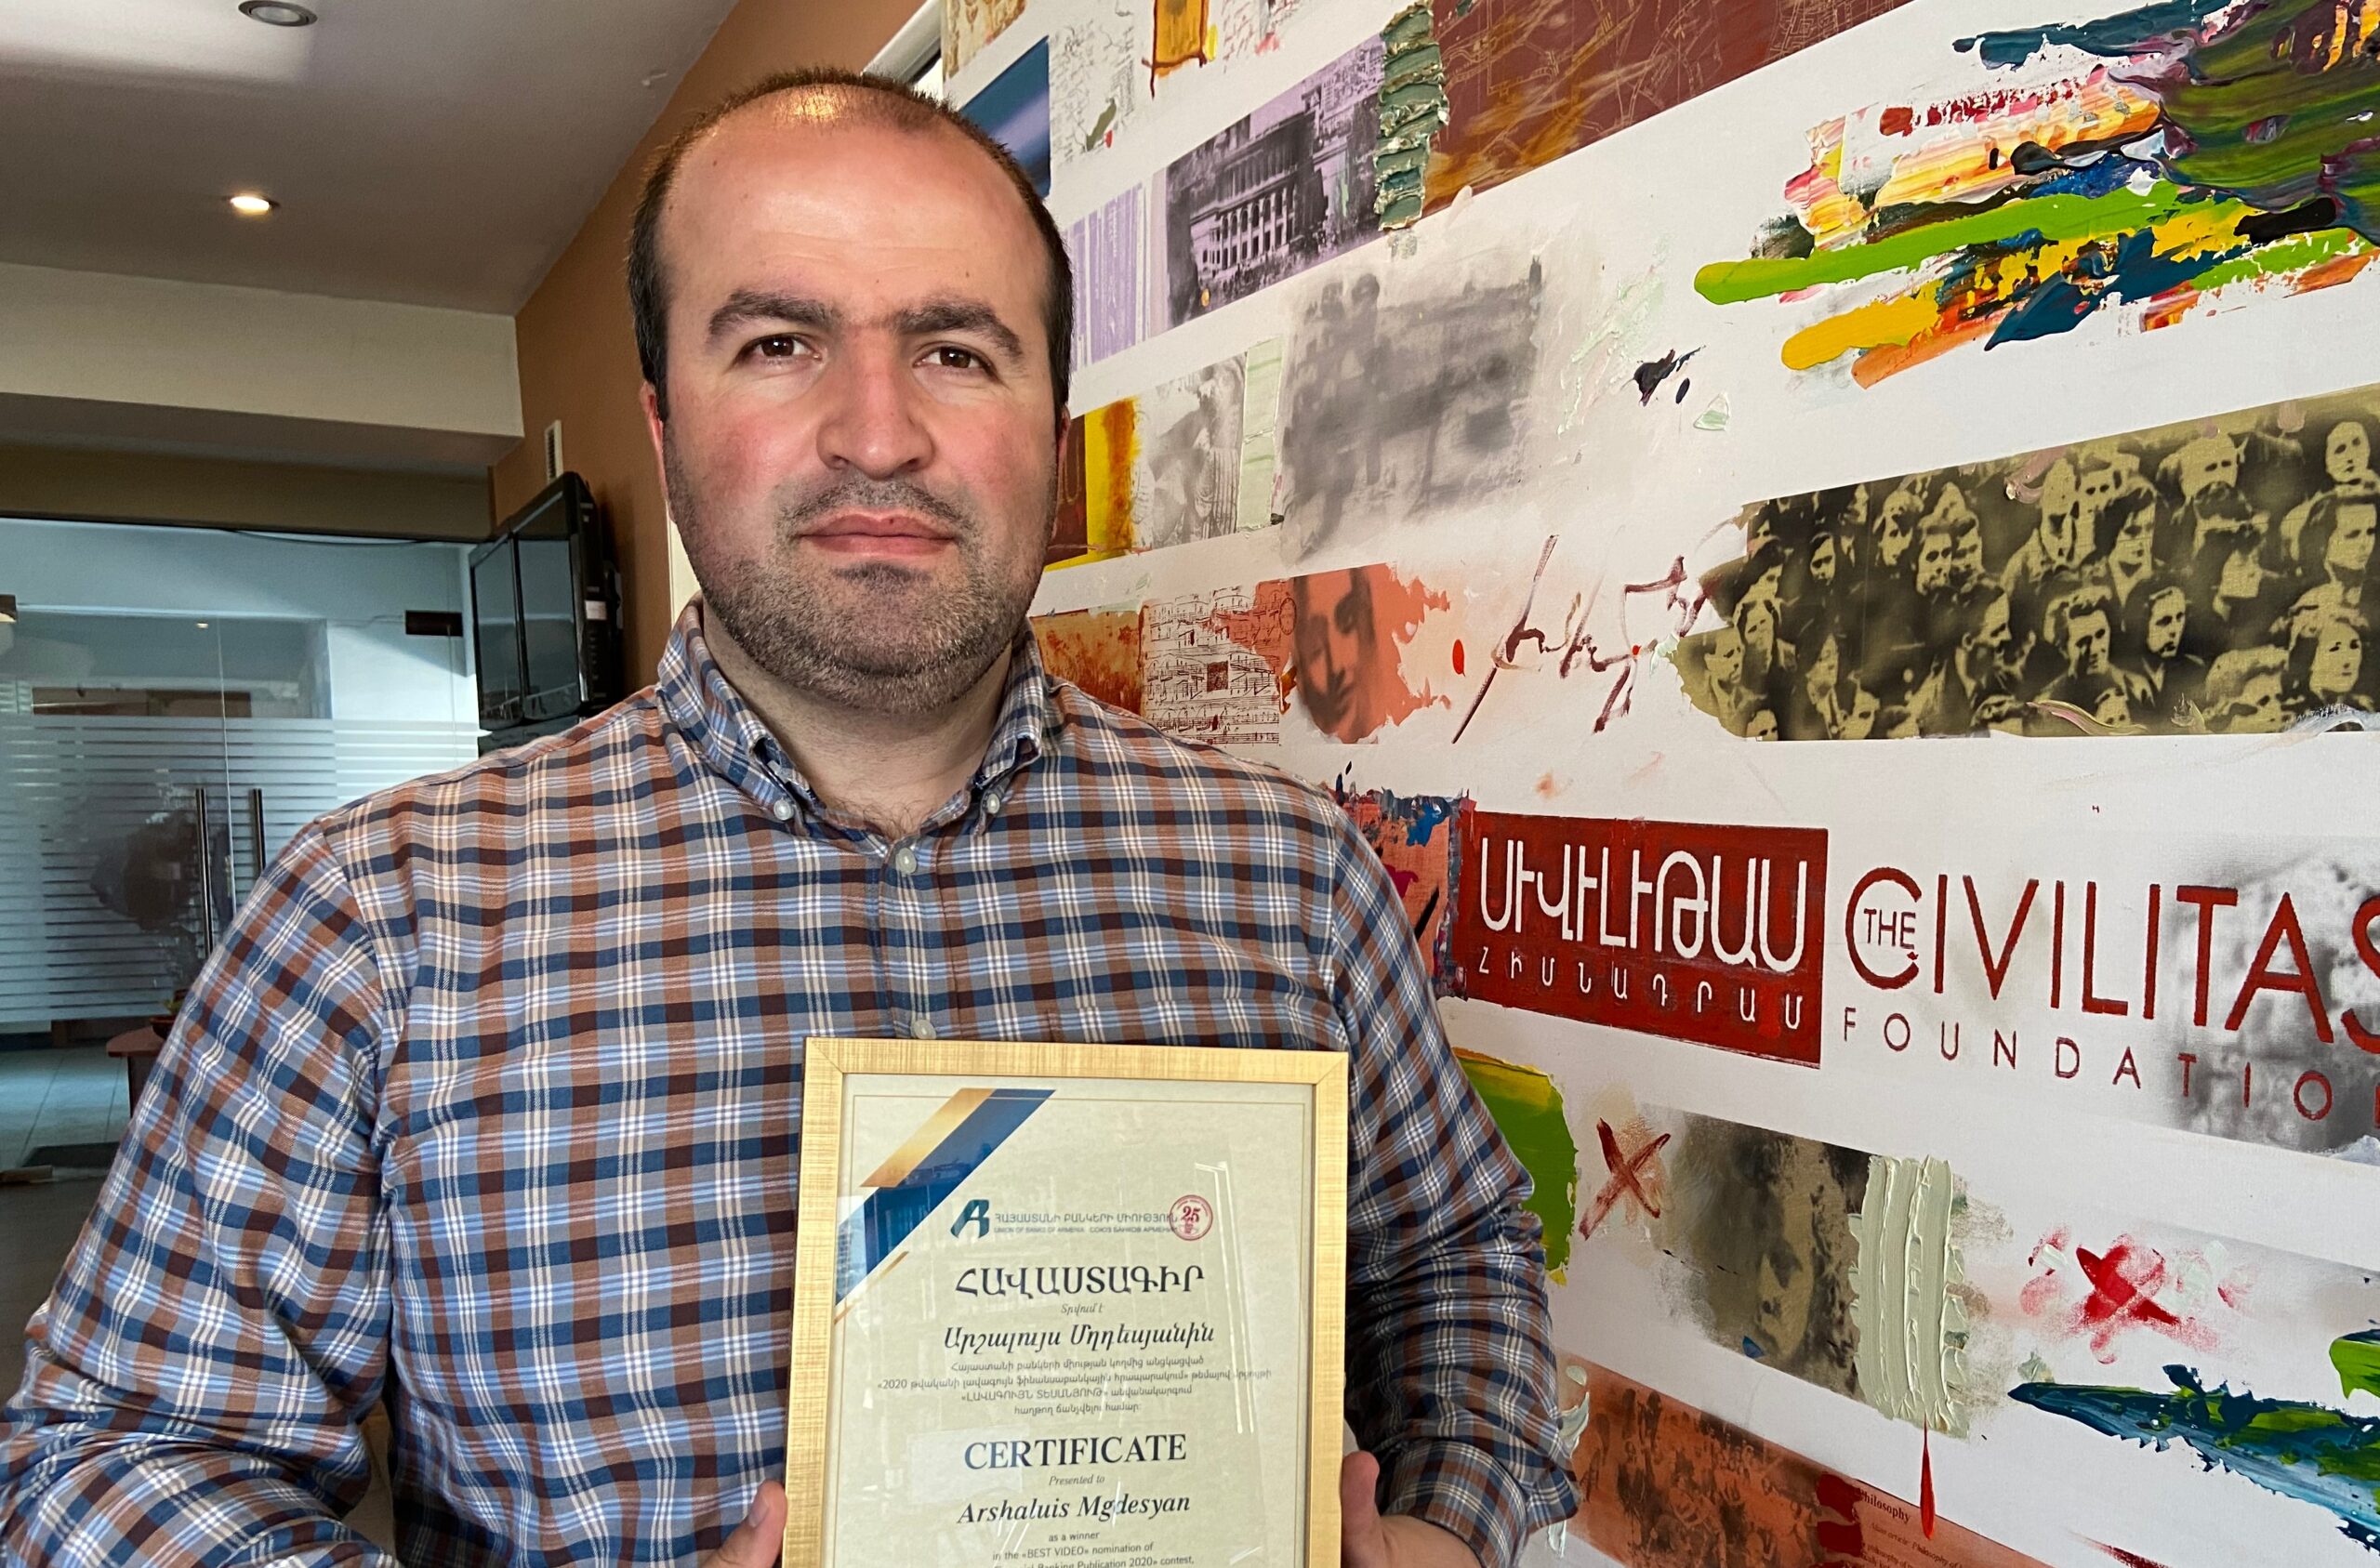 ՍիվիլՆեթի լրագրողը հաղթող է ճանաչվել Հայաստանի բանկերի միության մրցույթում